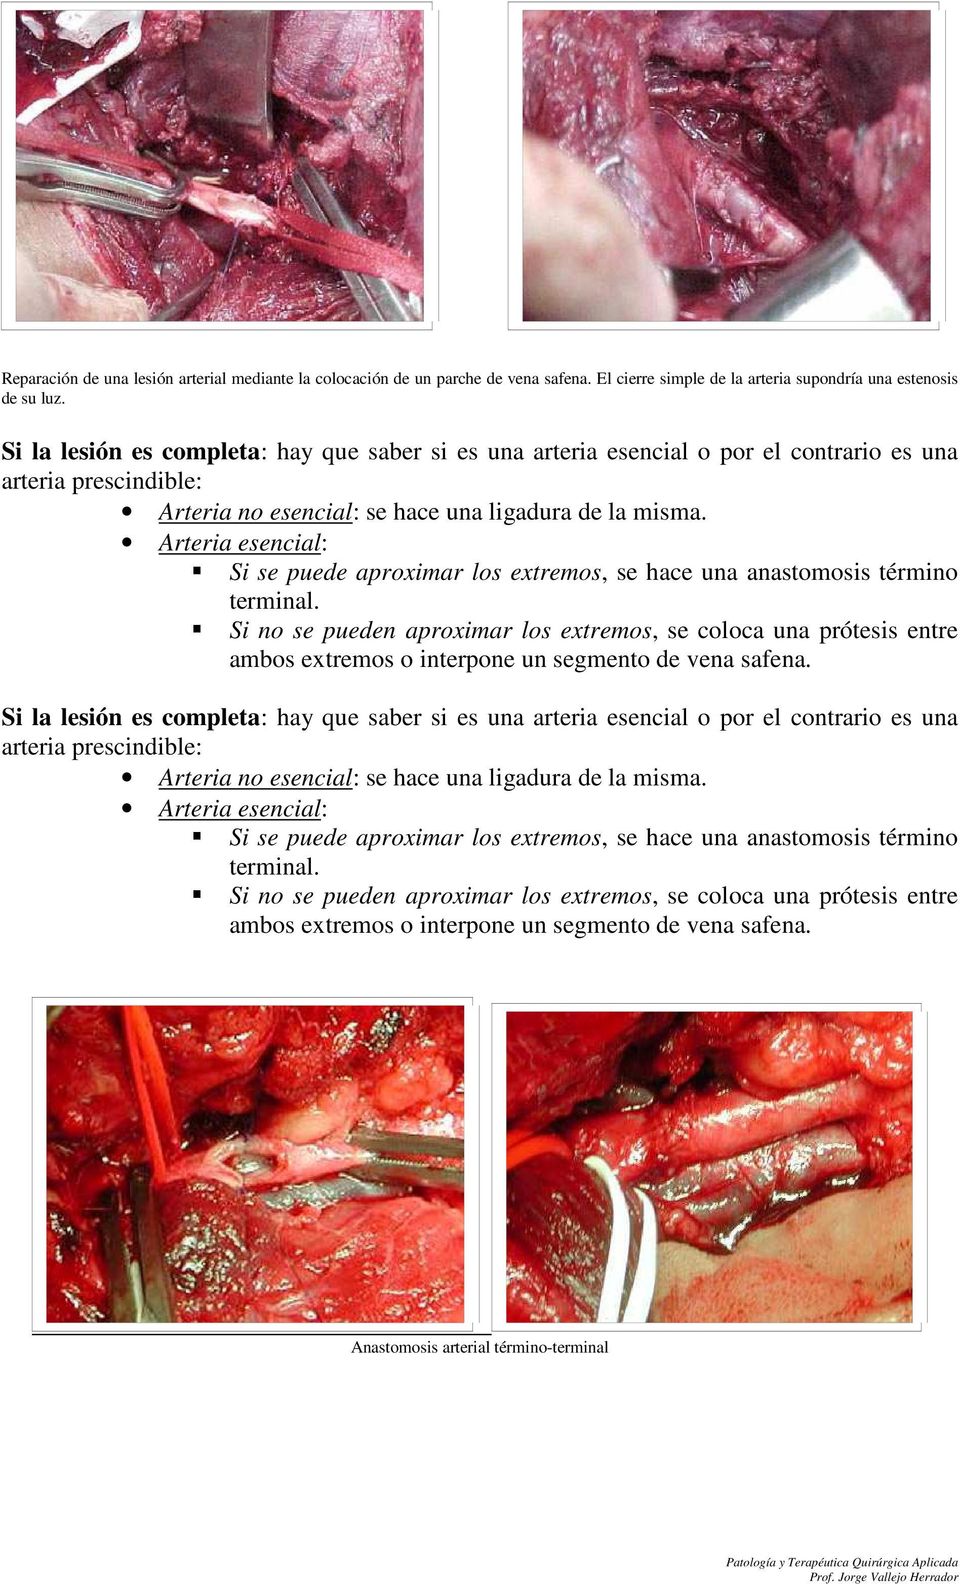 Arteria esencial: Si se puede aproximar los extremos, se hace una anastomosis término terminal.